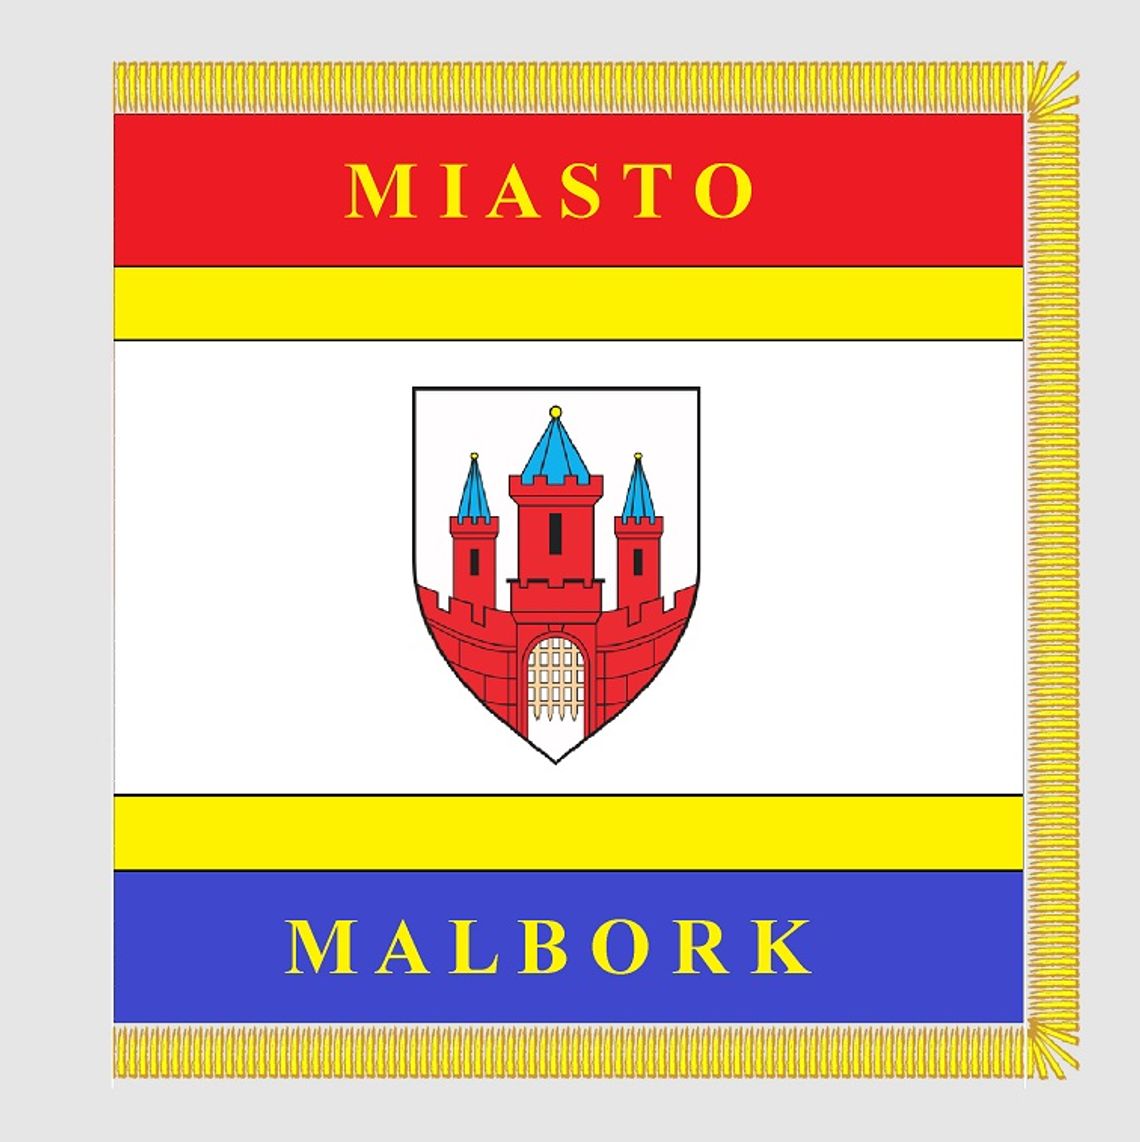  Kiedy Miasto Malbork będzie miało swój sztandar? 